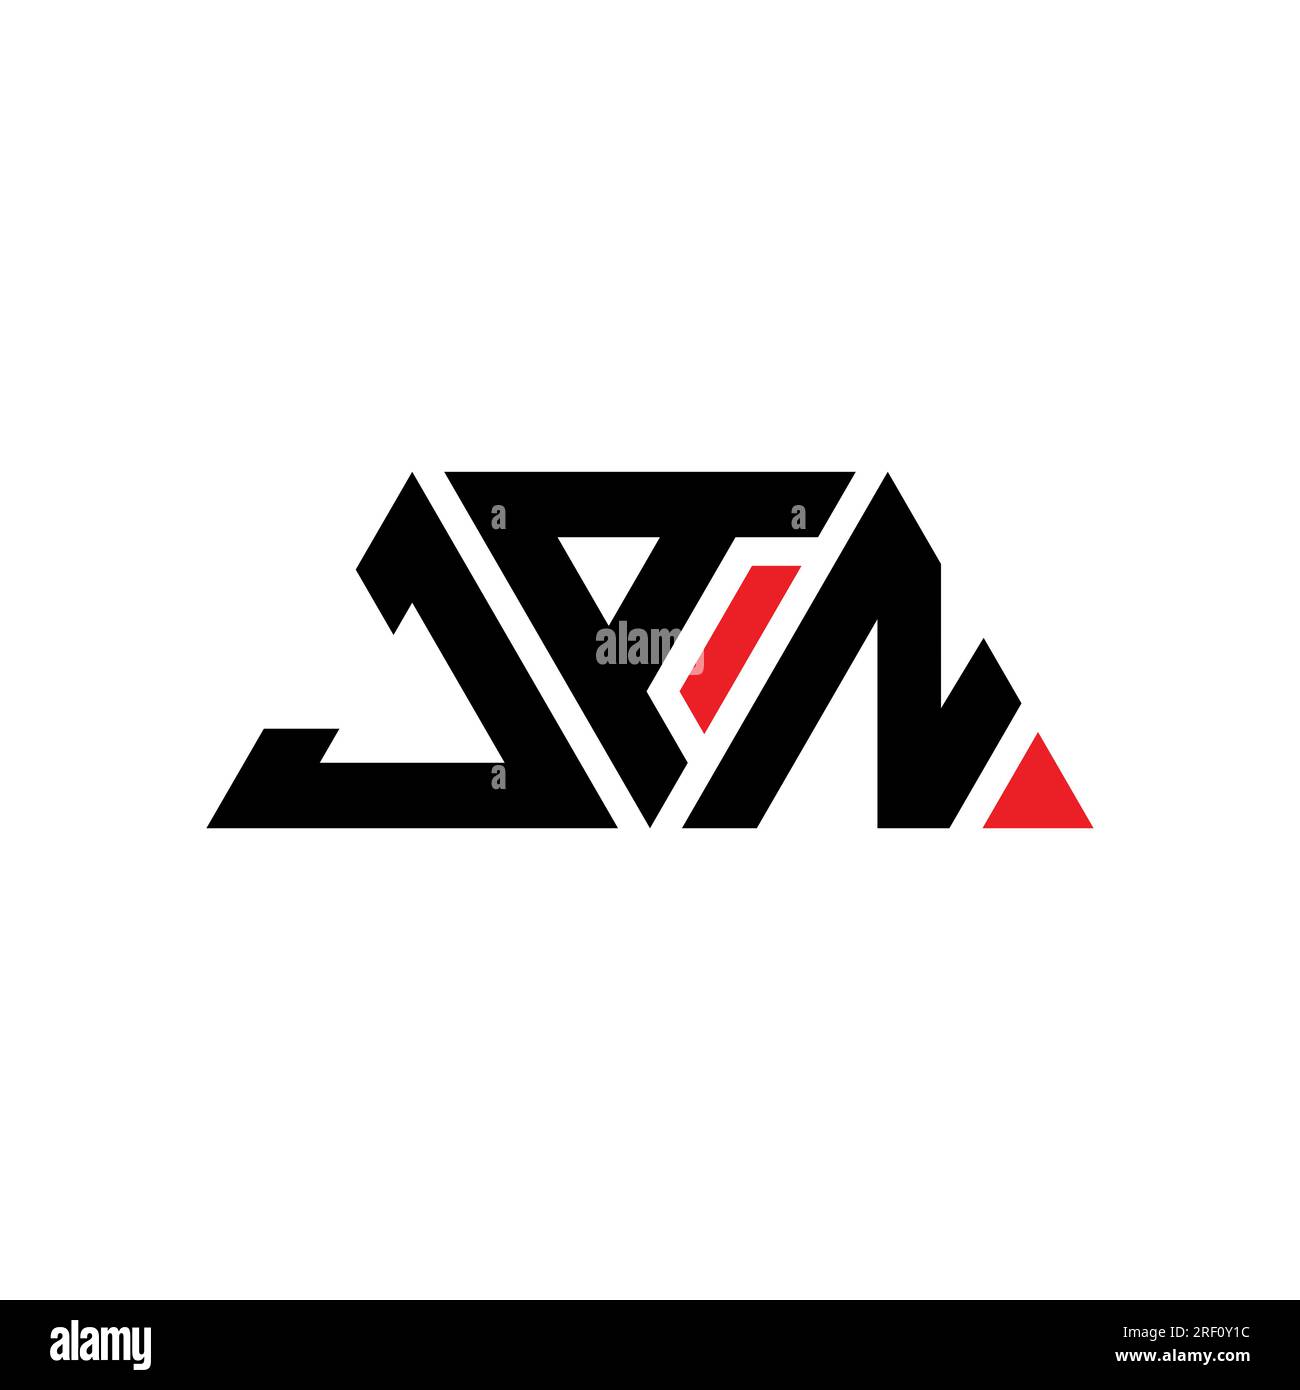 JAN-Logo mit Dreiecksbuchstaben und Dreiecksform. JAN-Dreieck-Logo-Monogramm. JAN-Dreieck-Vektor-Logo-Vorlage mit roter Farbe. JAN Triangul Stock Vektor